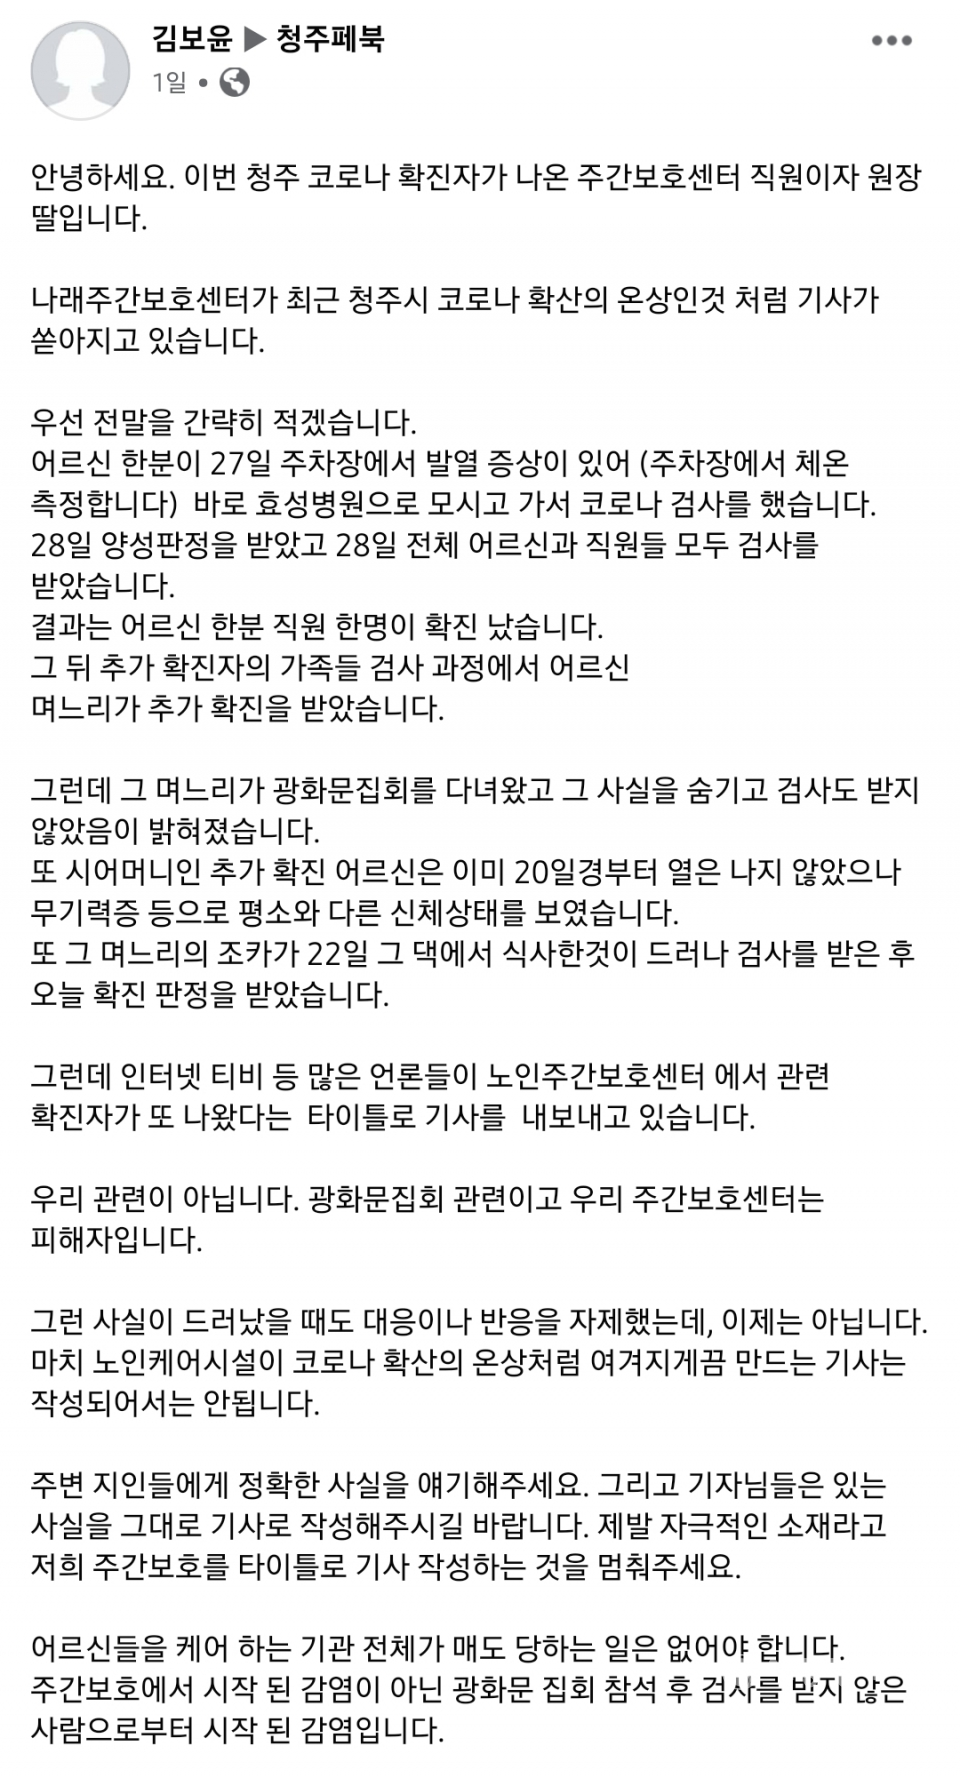 김보윤 학생이 SNS에 올린 게시글